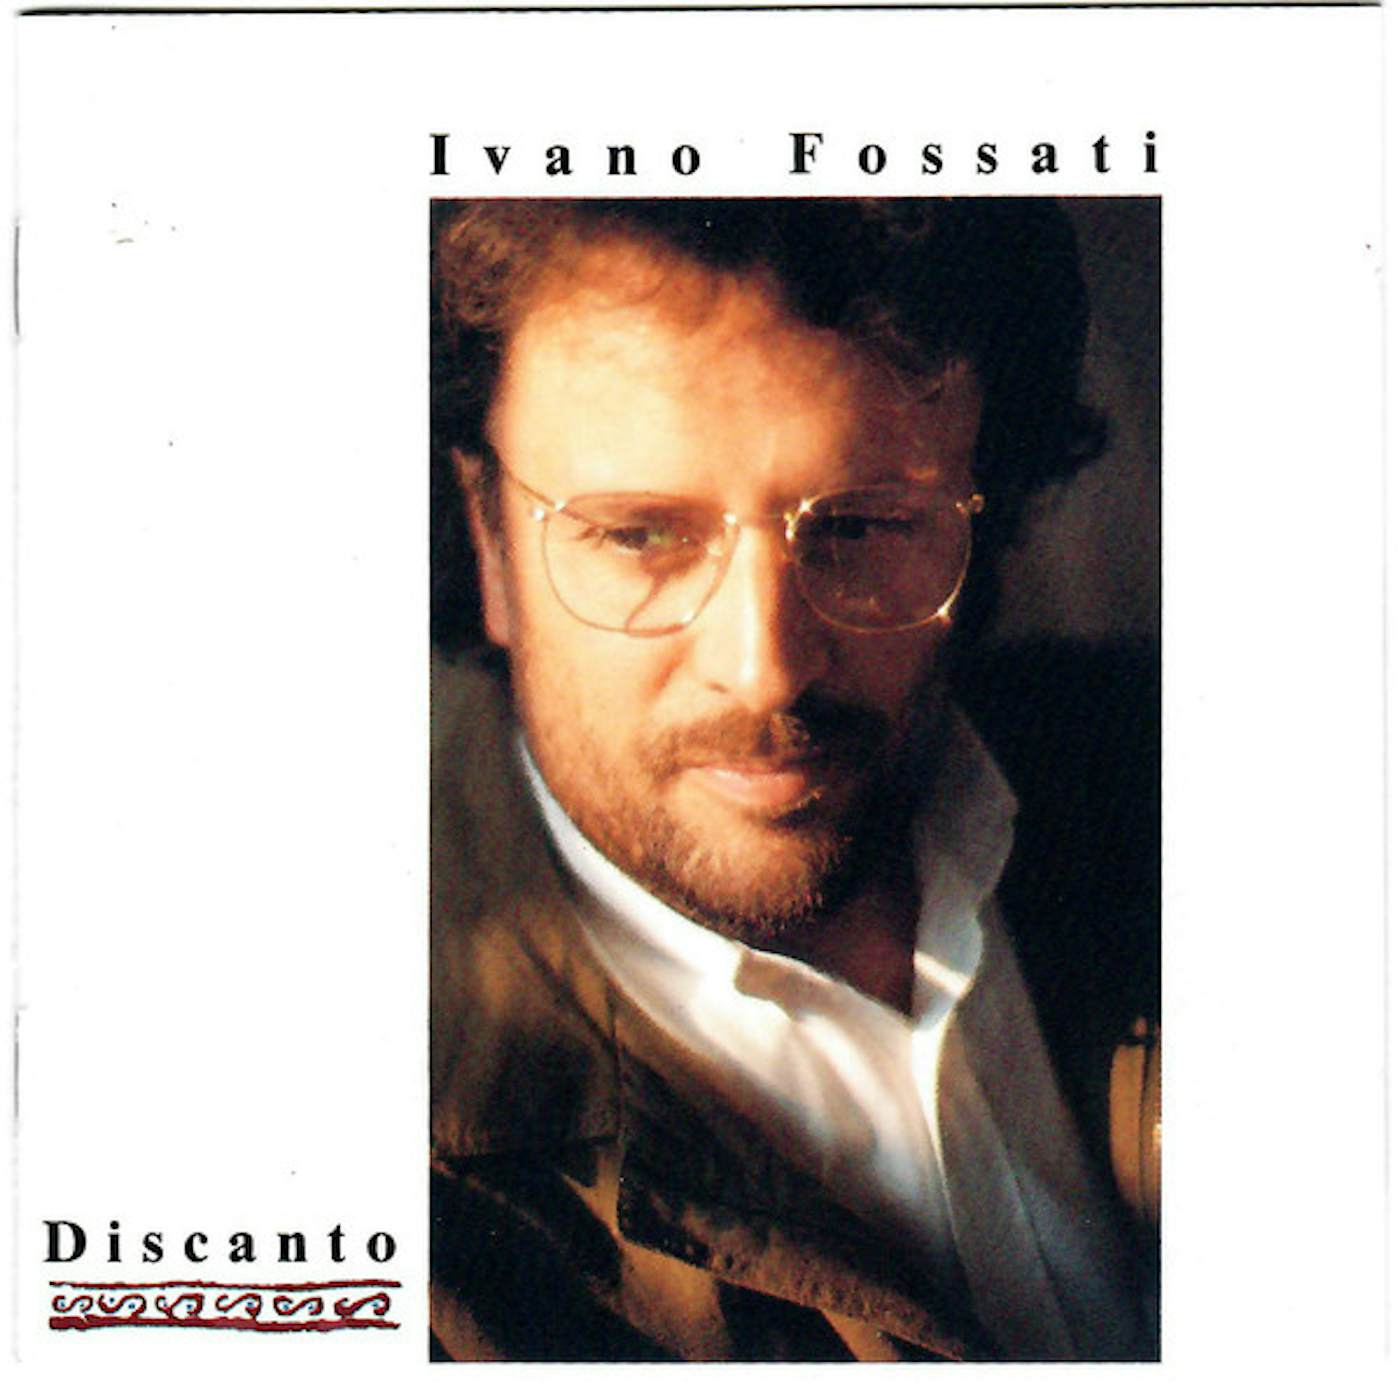 Ivano Fossati Discanto Vinyl Record